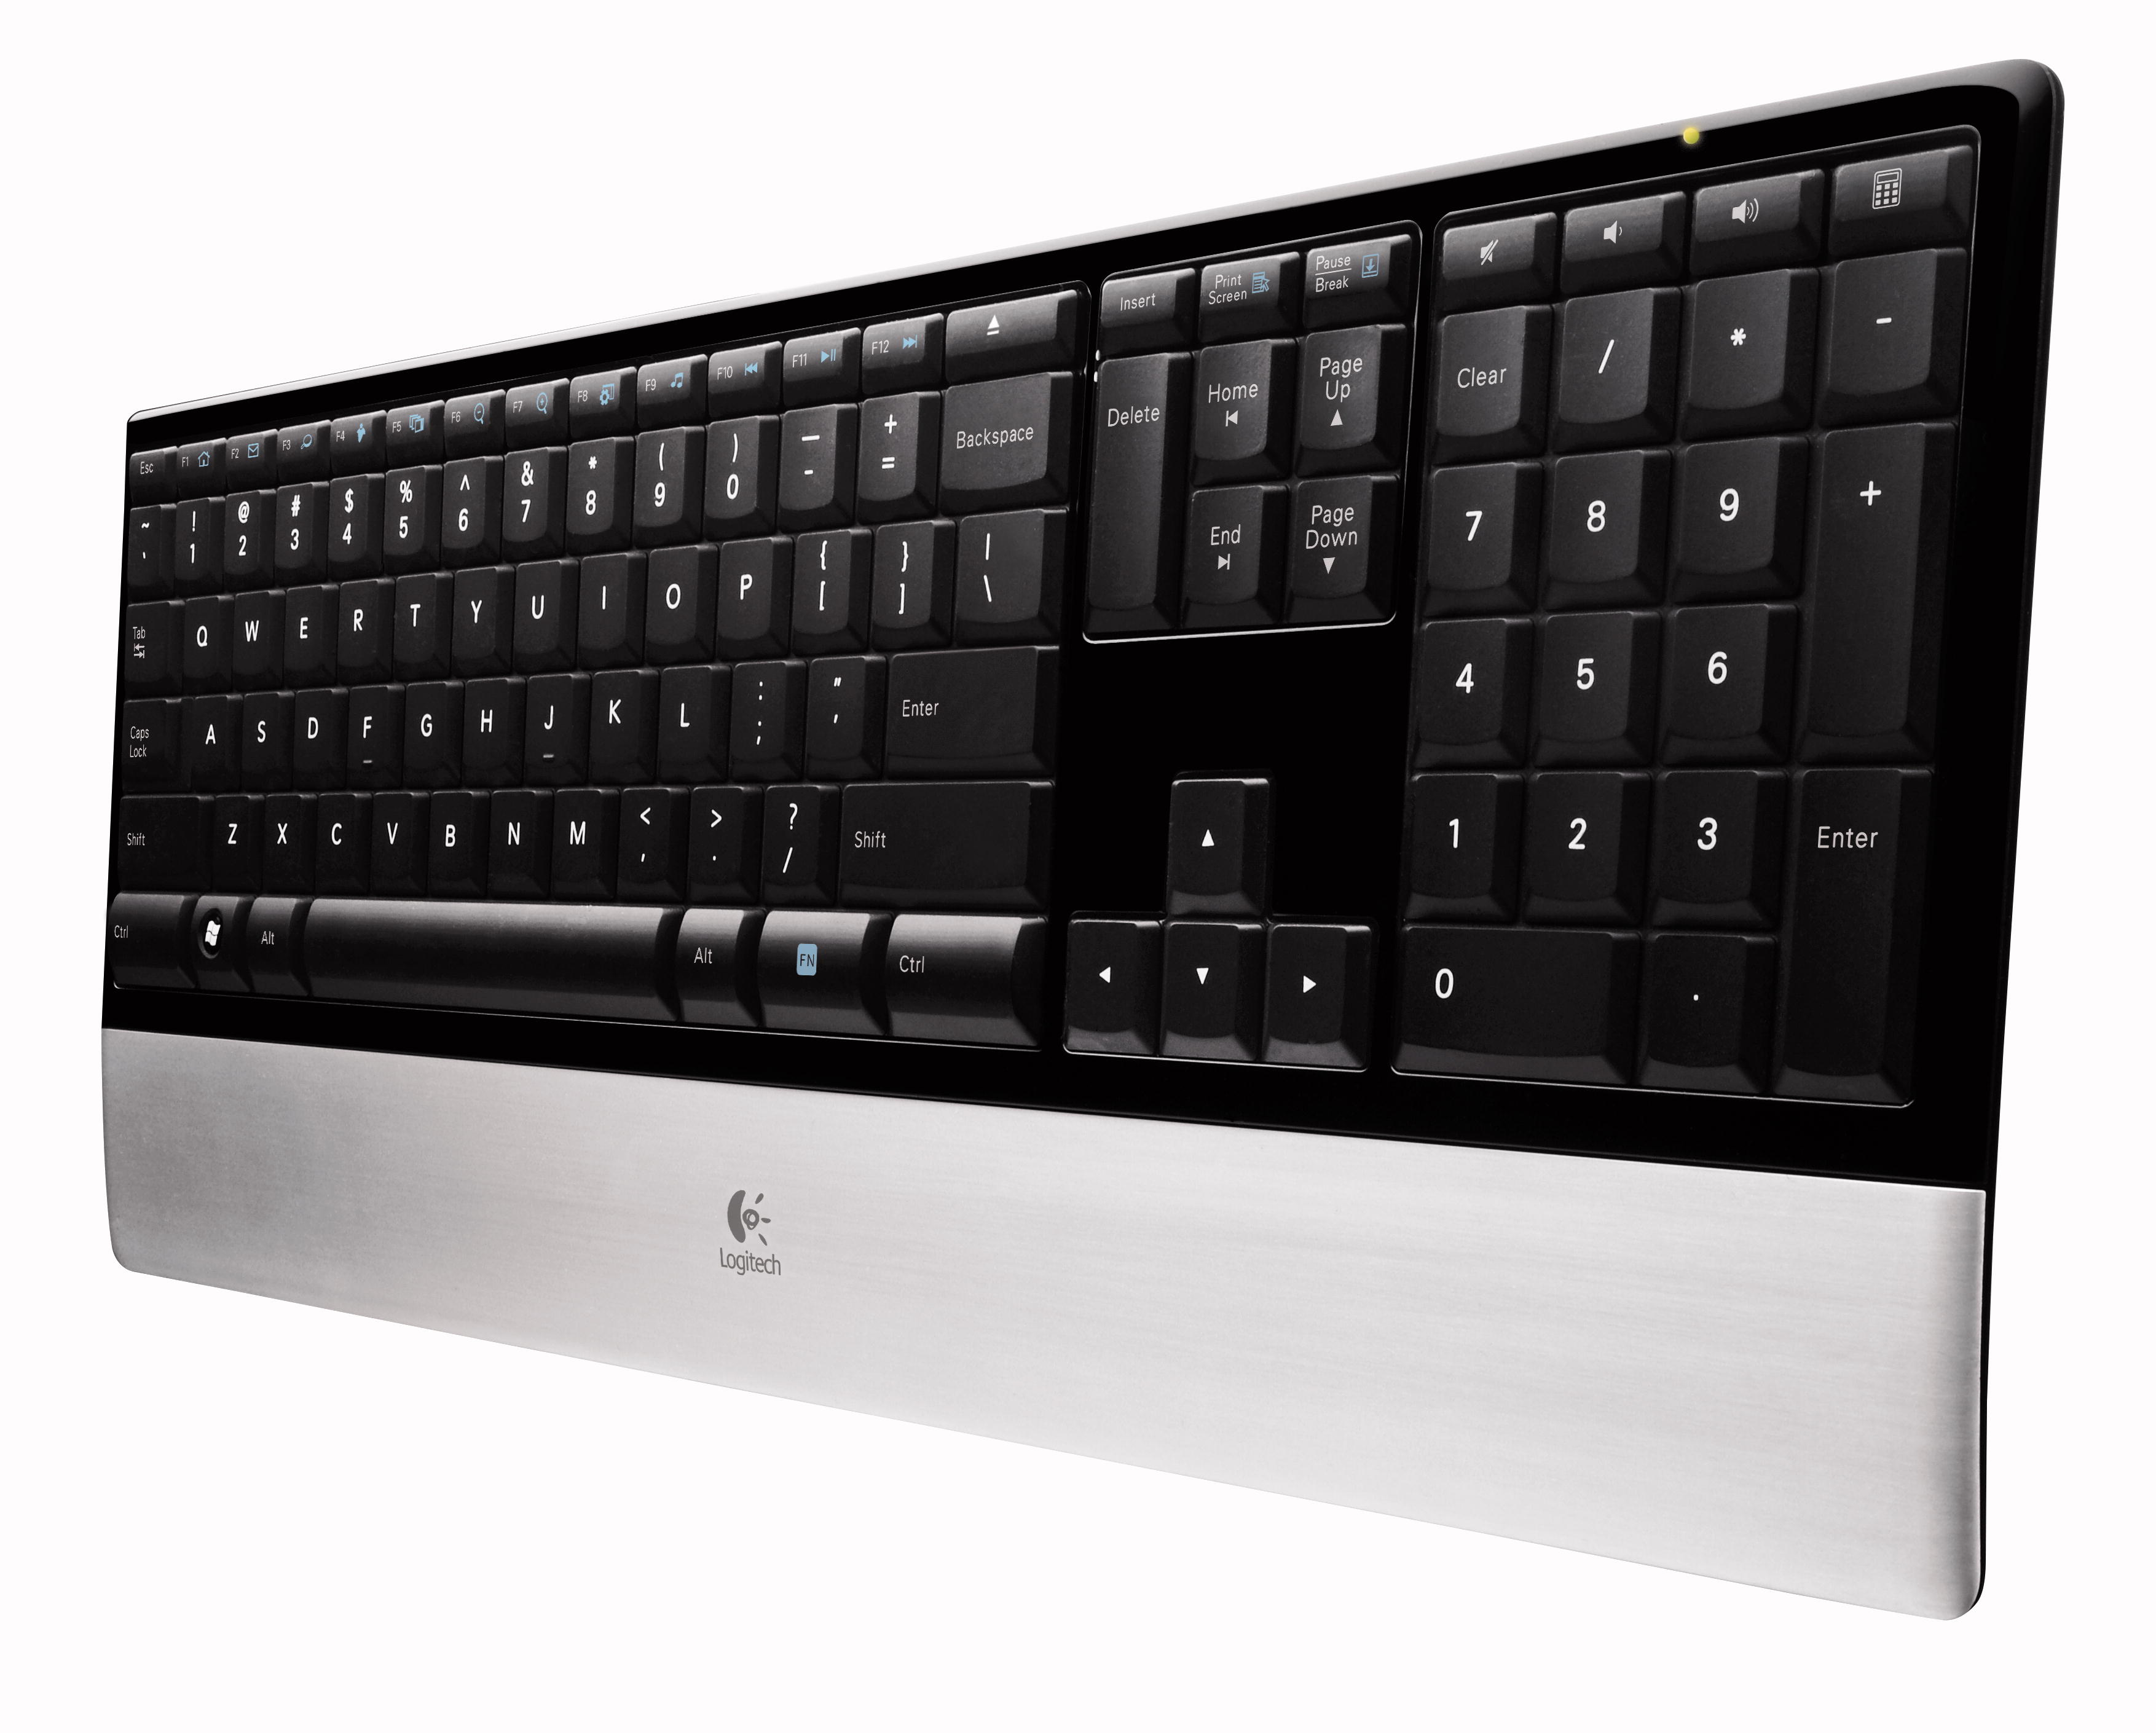 Immagine pubblicata in relazione al seguente contenuto: Logitech annuncia la nuova tastiera Illuminated Keyboard | Nome immagine: news8463_2.jpg